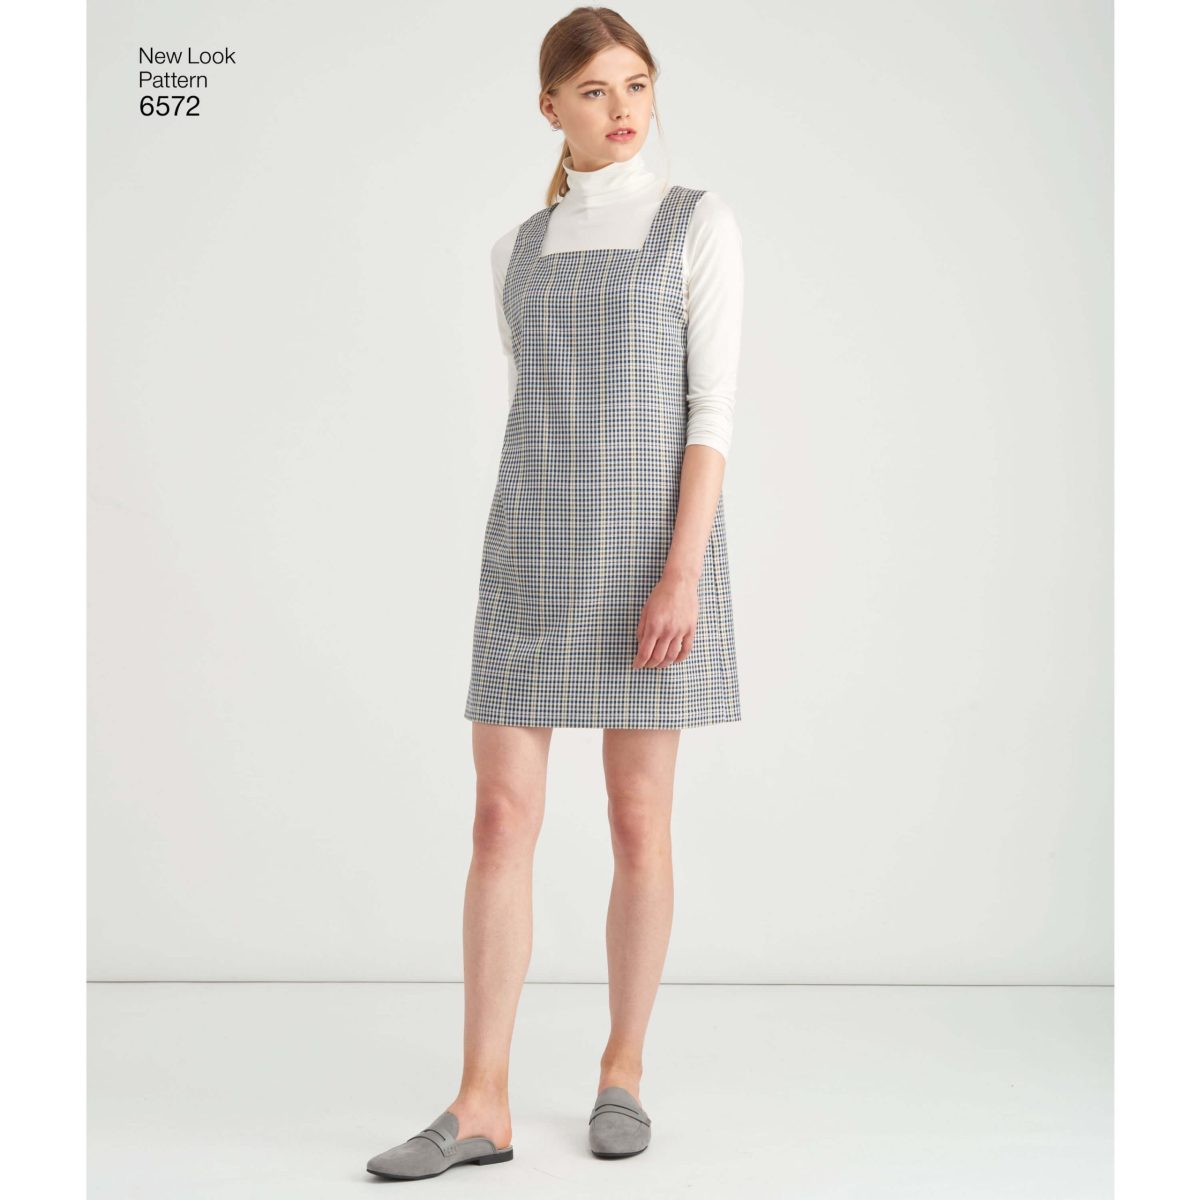 New Look Pattern 6572 Misses' Jumper Dress